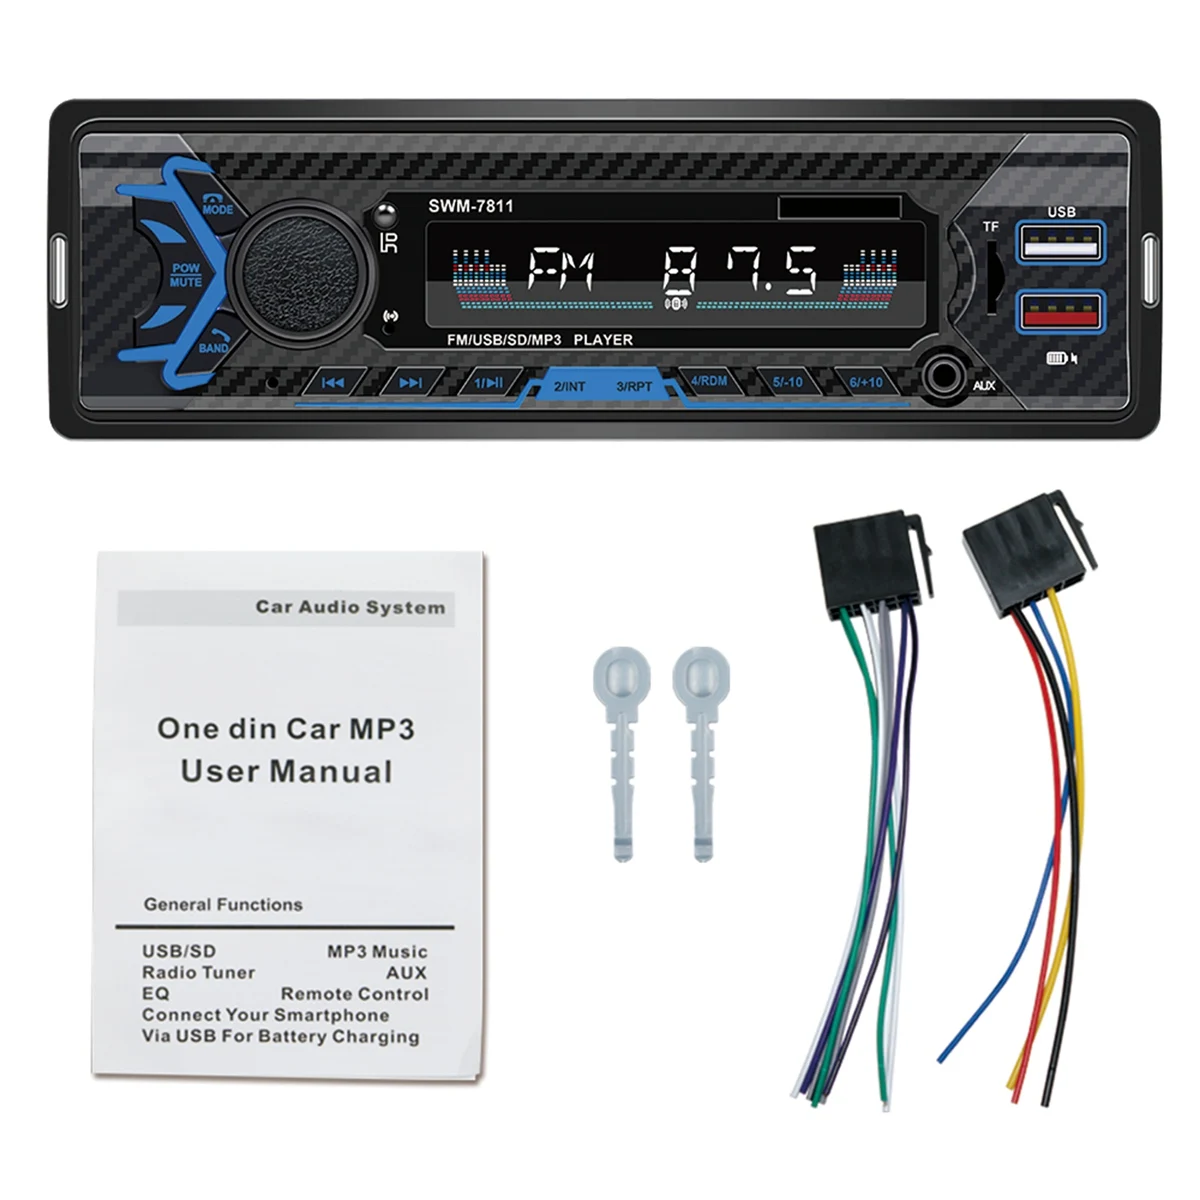 

Автомагнитола 1 DIN, автомобильная аудиосистема Bluetooth с USB/SD/AUX картой, FM, mp3-плеером, тип ПК: магнитола